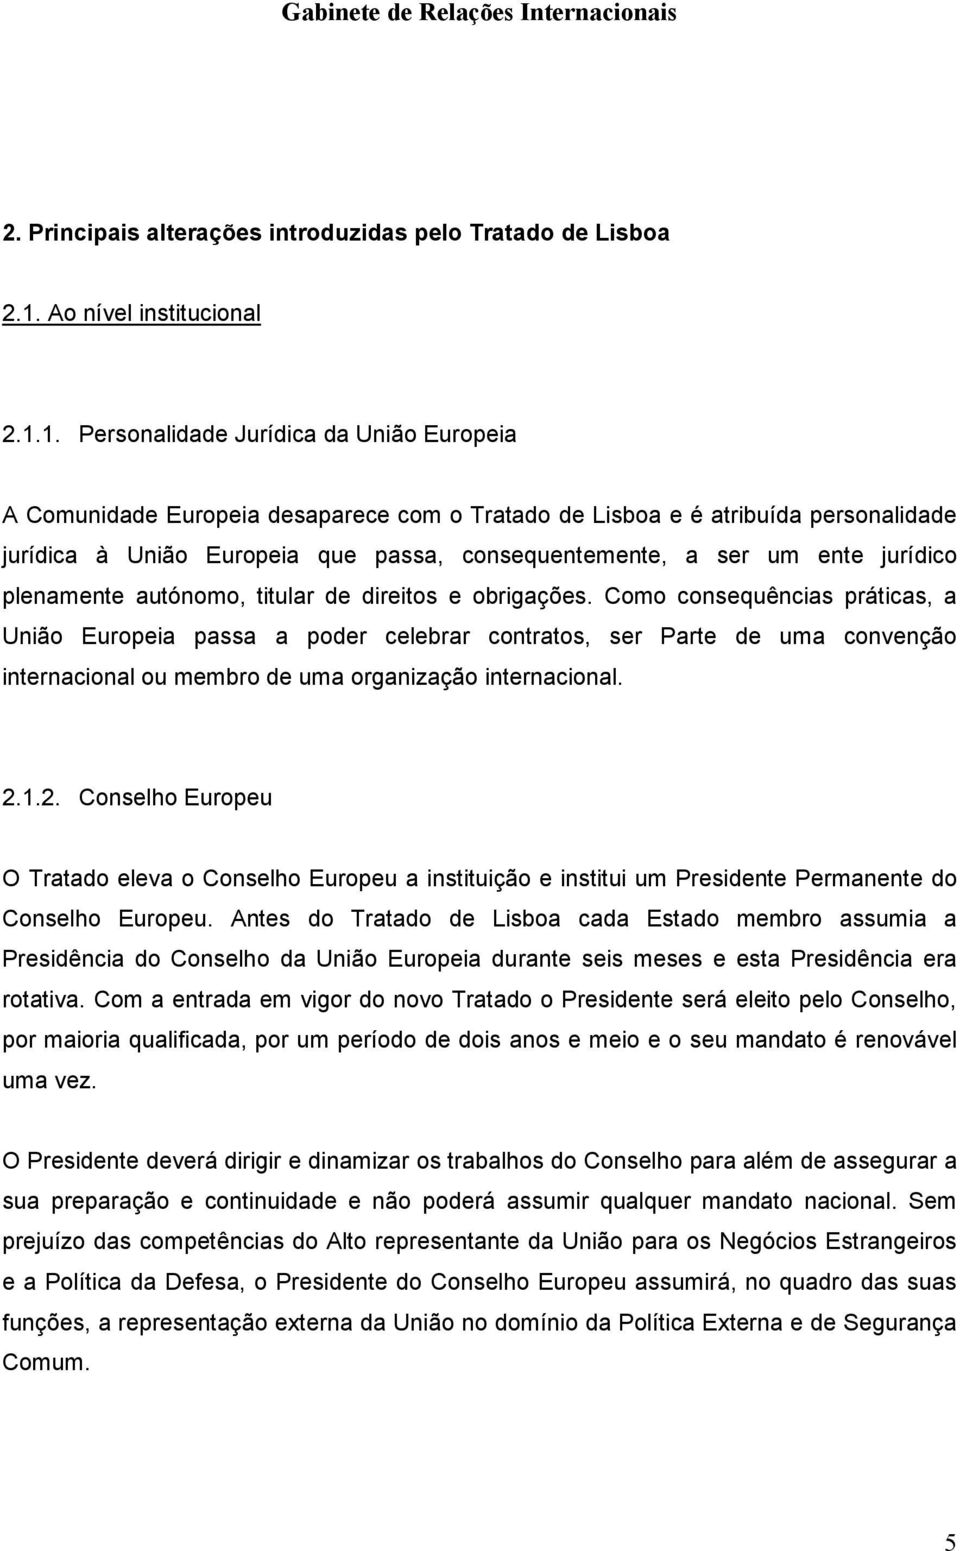 1. Personalidade Jurídica da União Europeia A Comunidade Europeia desaparece com o Tratado de Lisboa e é atribuída personalidade jurídica à União Europeia que passa, consequentemente, a ser um ente